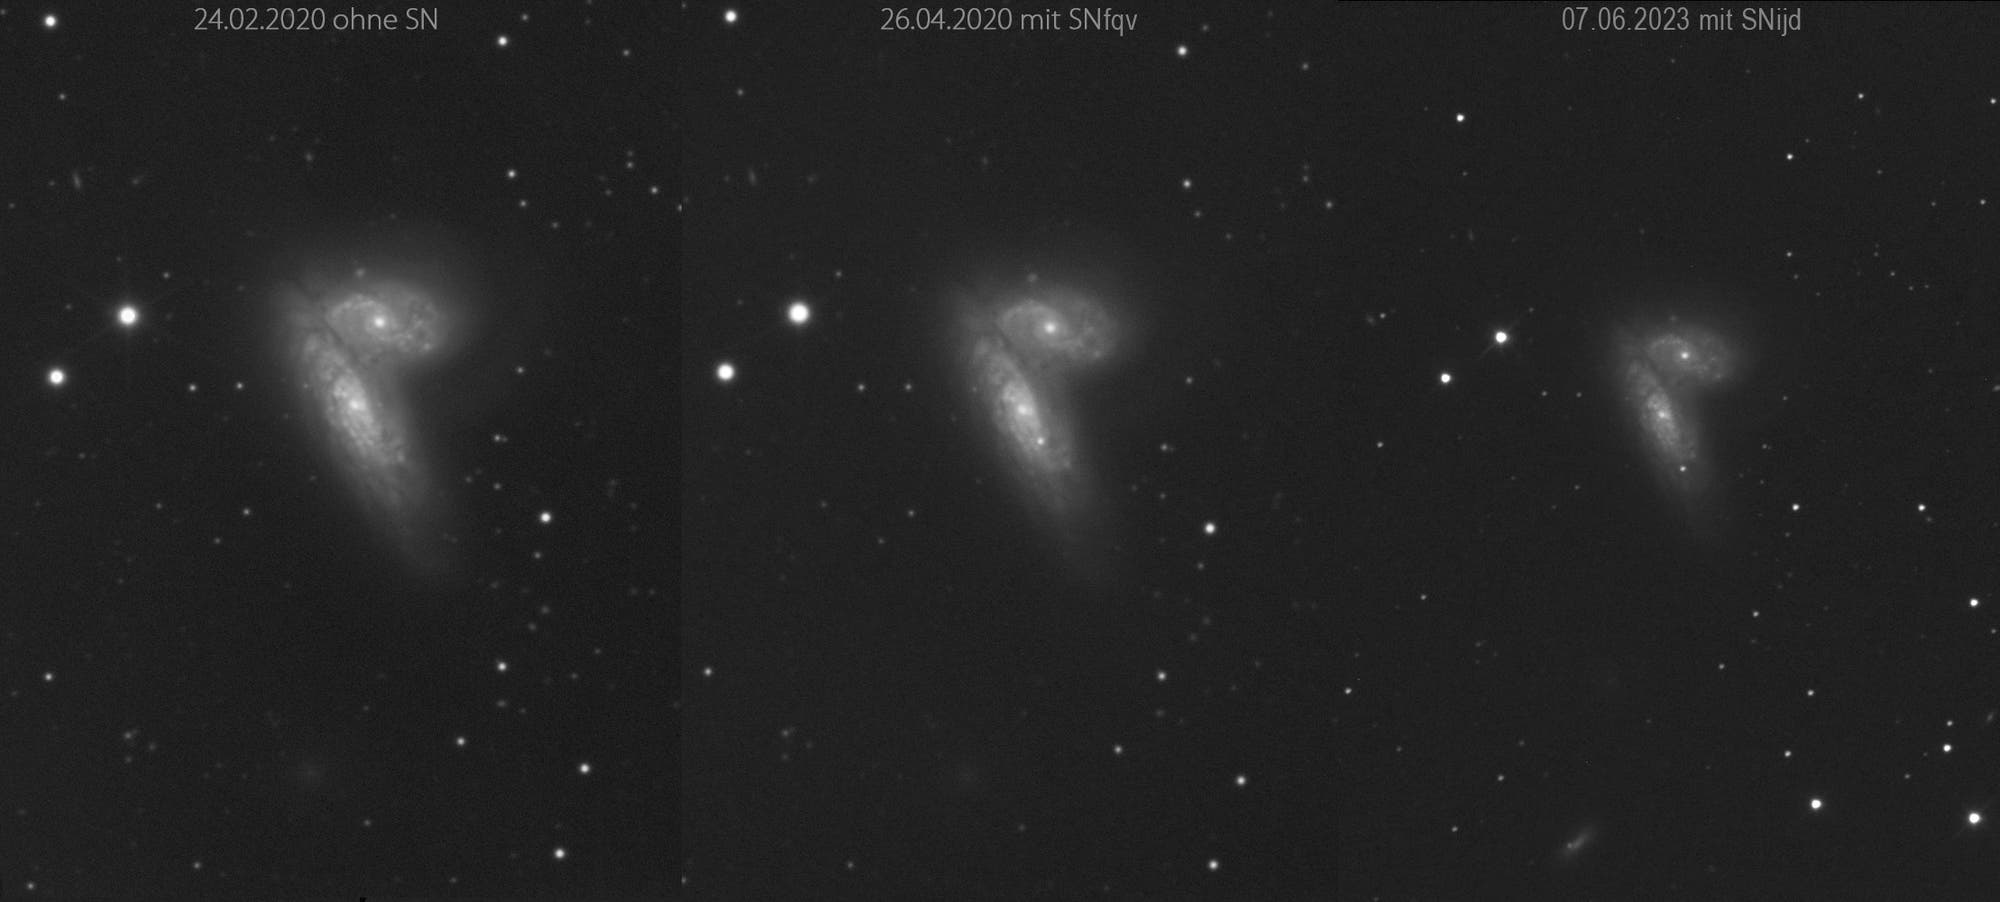 NGC 4568 mit SN 2020fqv und SN 2023ijd 